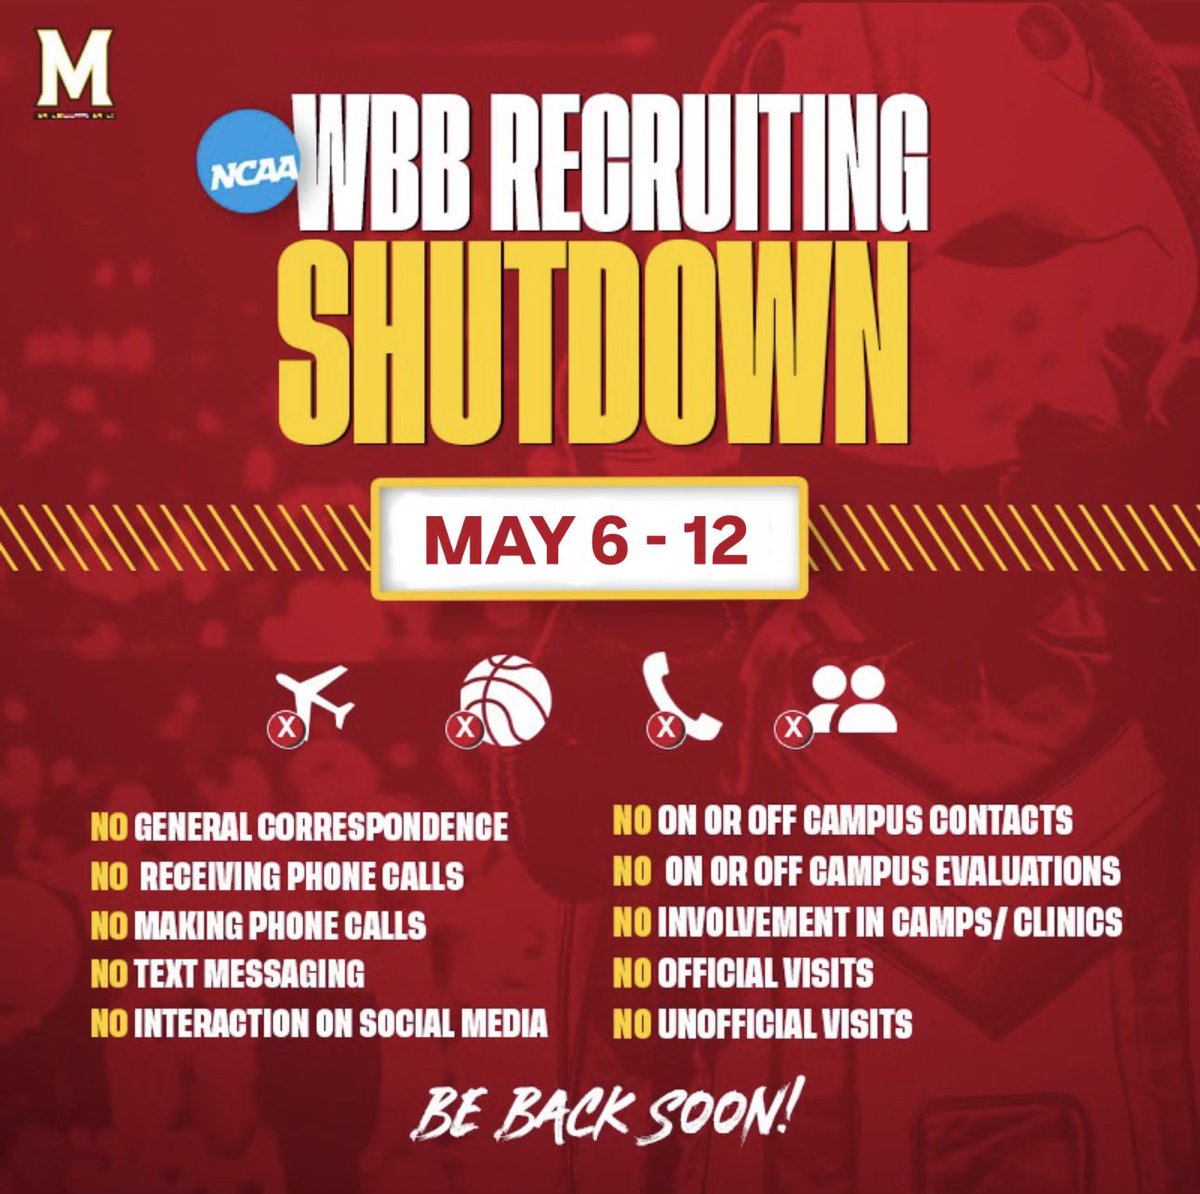 It’s Recruiting Shutdown week! Talk to you soon! ✌️🐢